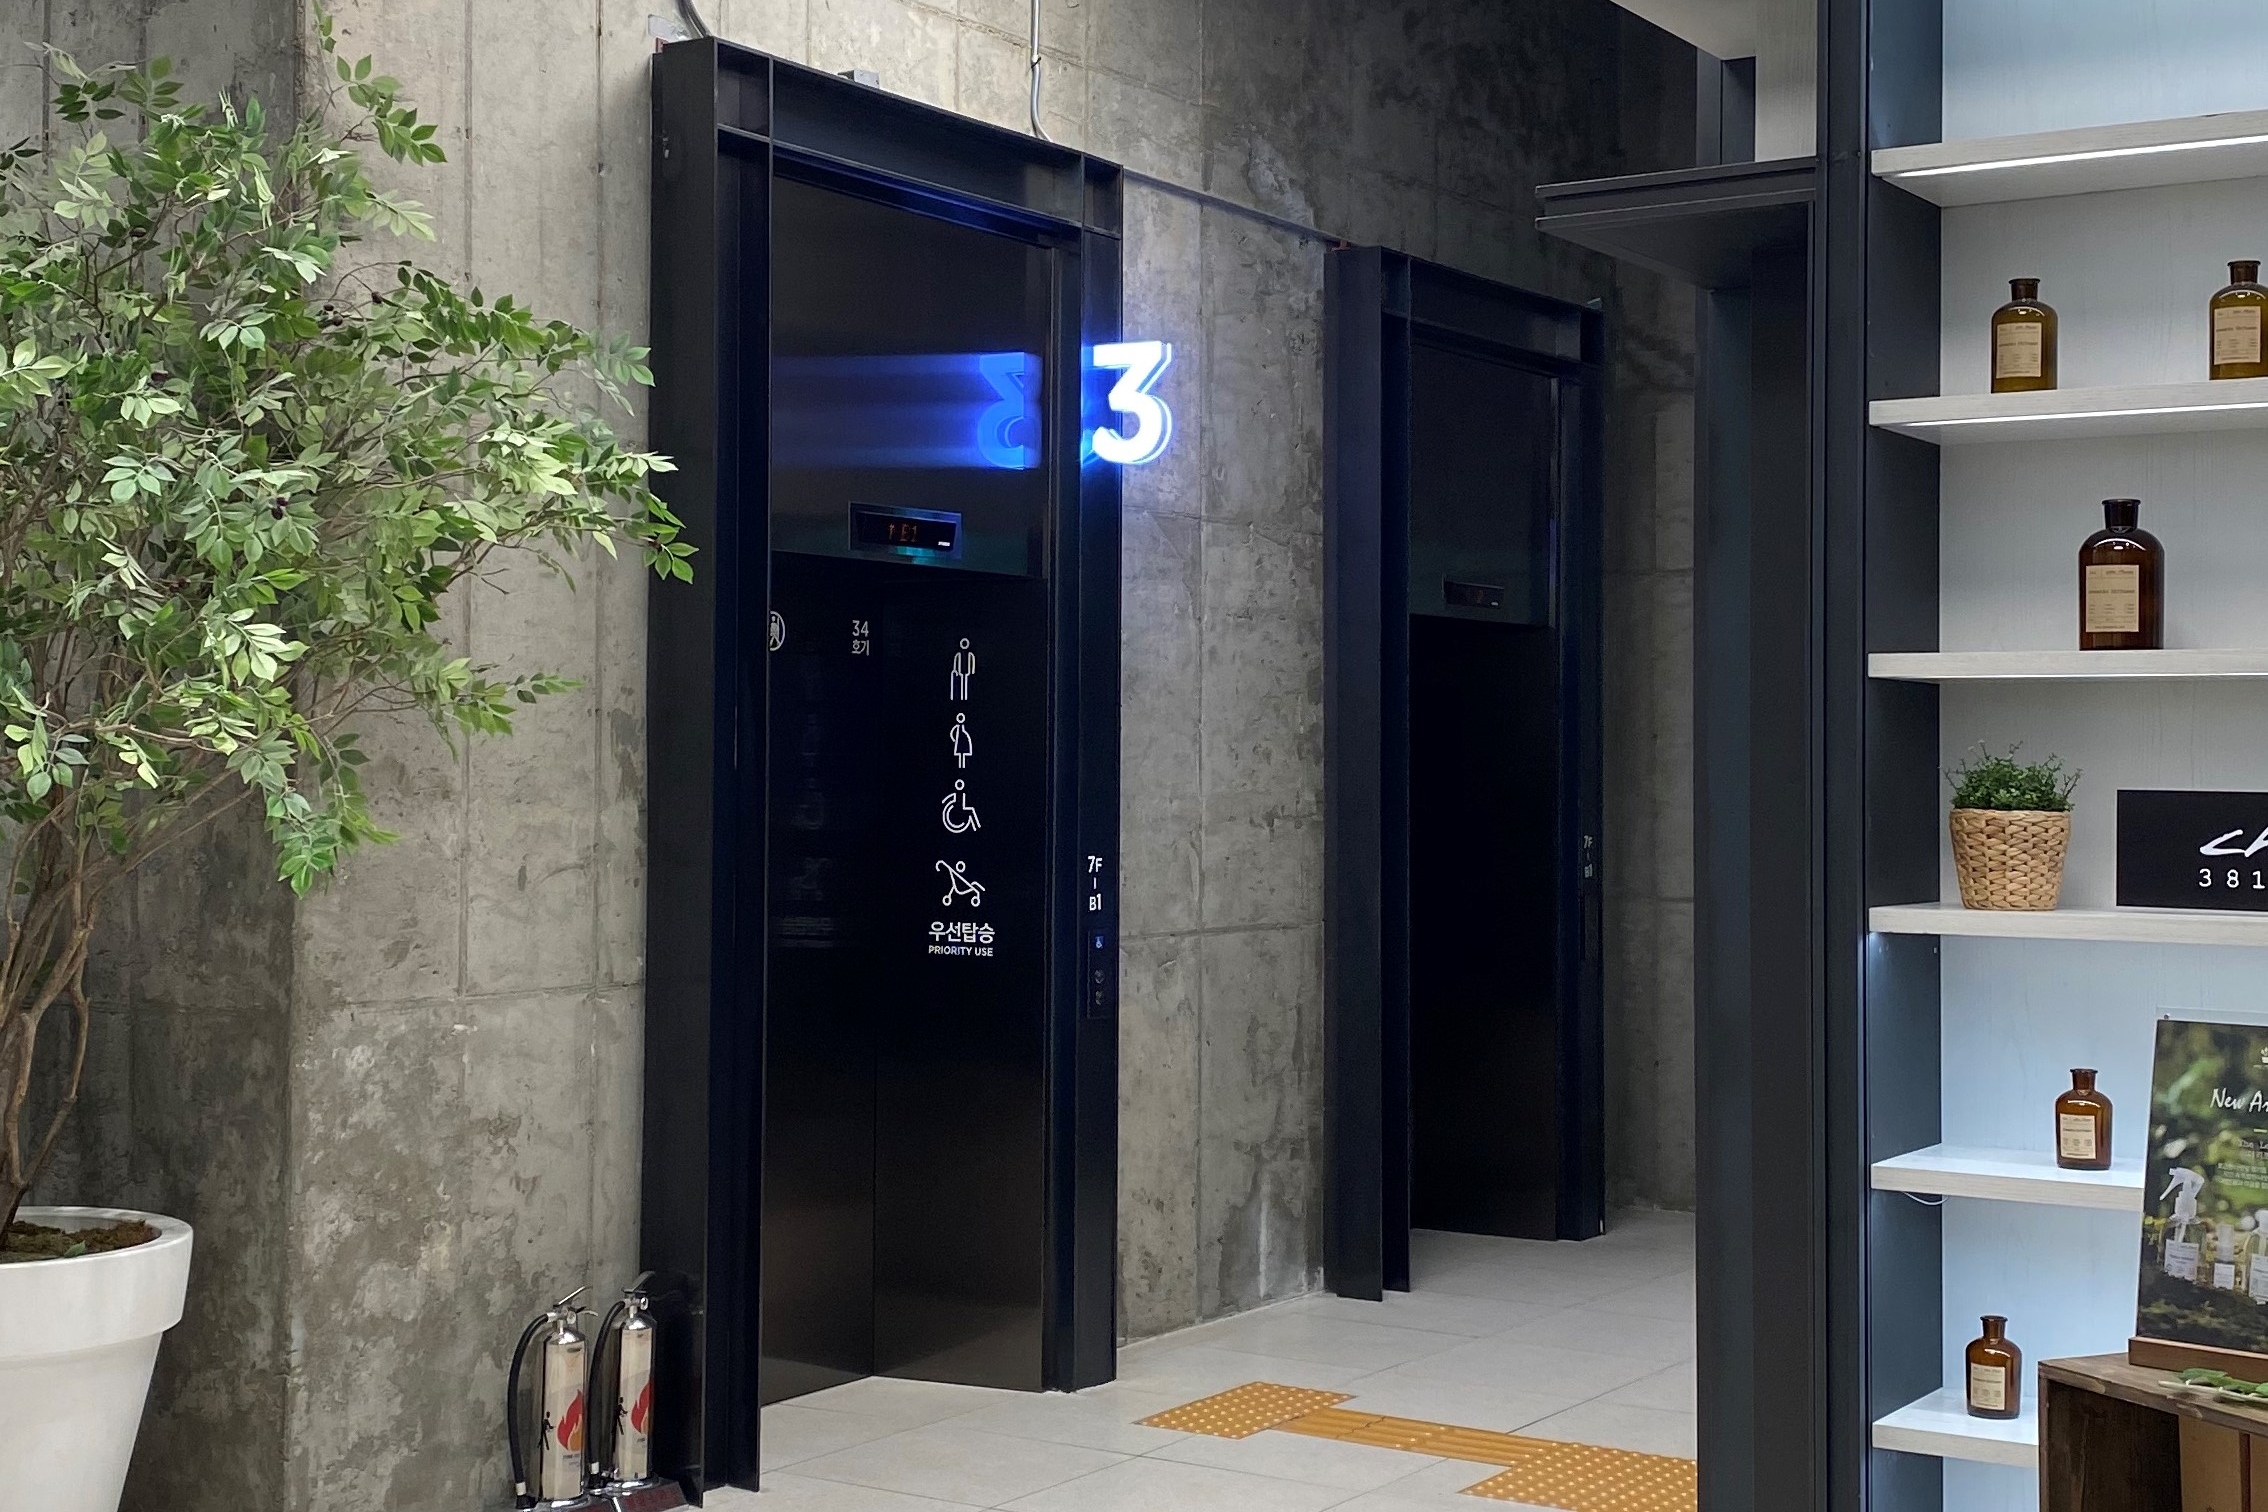 엘리베이터0 : 엘리베이터로 이용 가능해서 노약자, 장애인 등 접근성 우수
